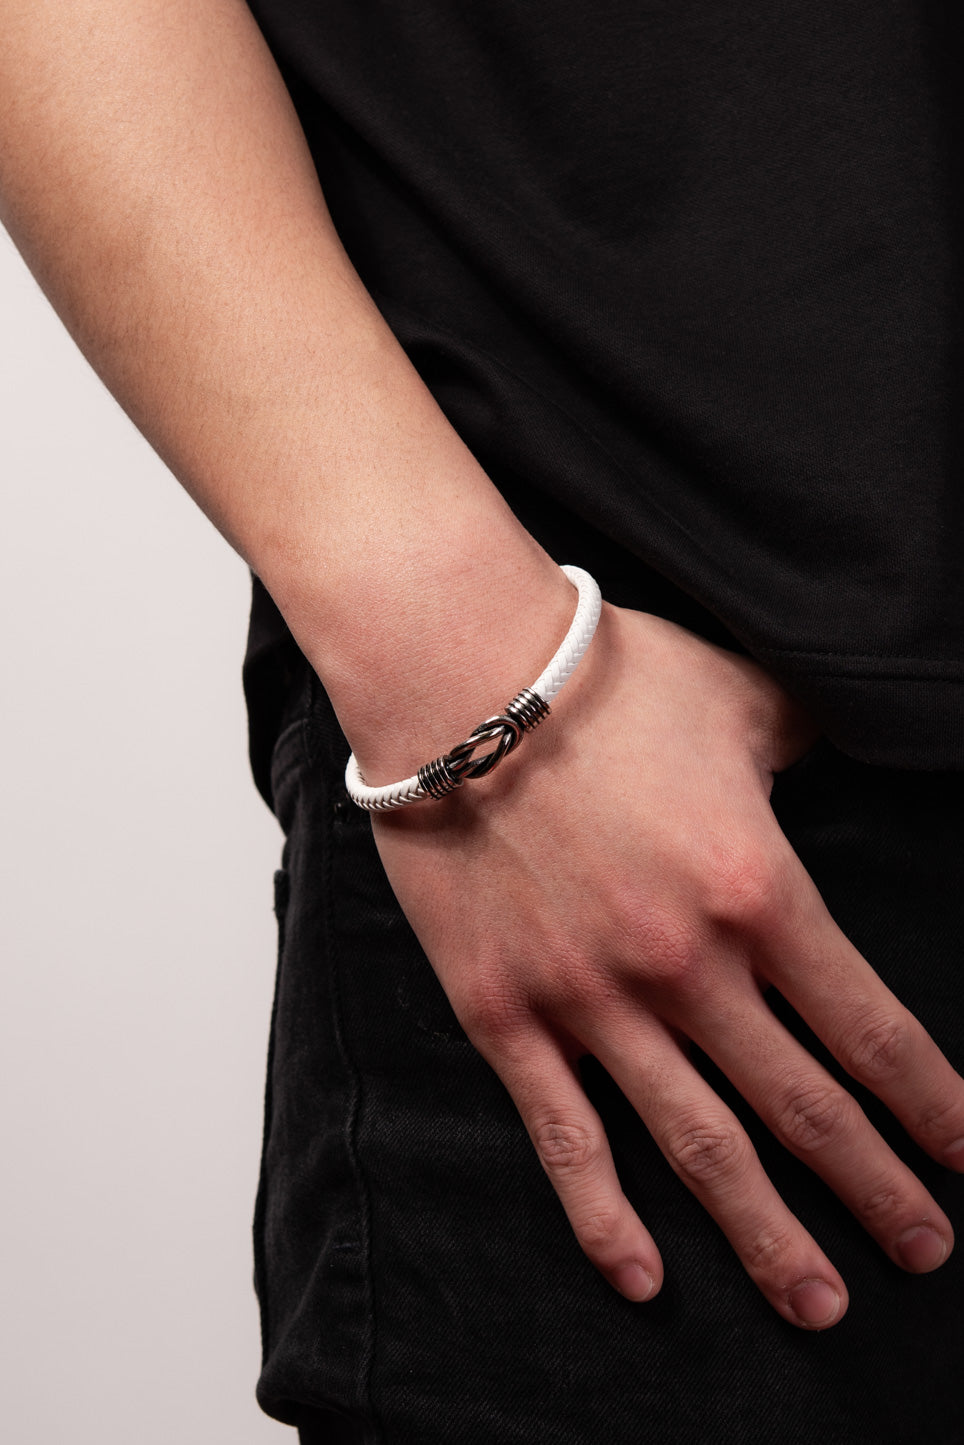 Stainless Steel White Cord Bracelet